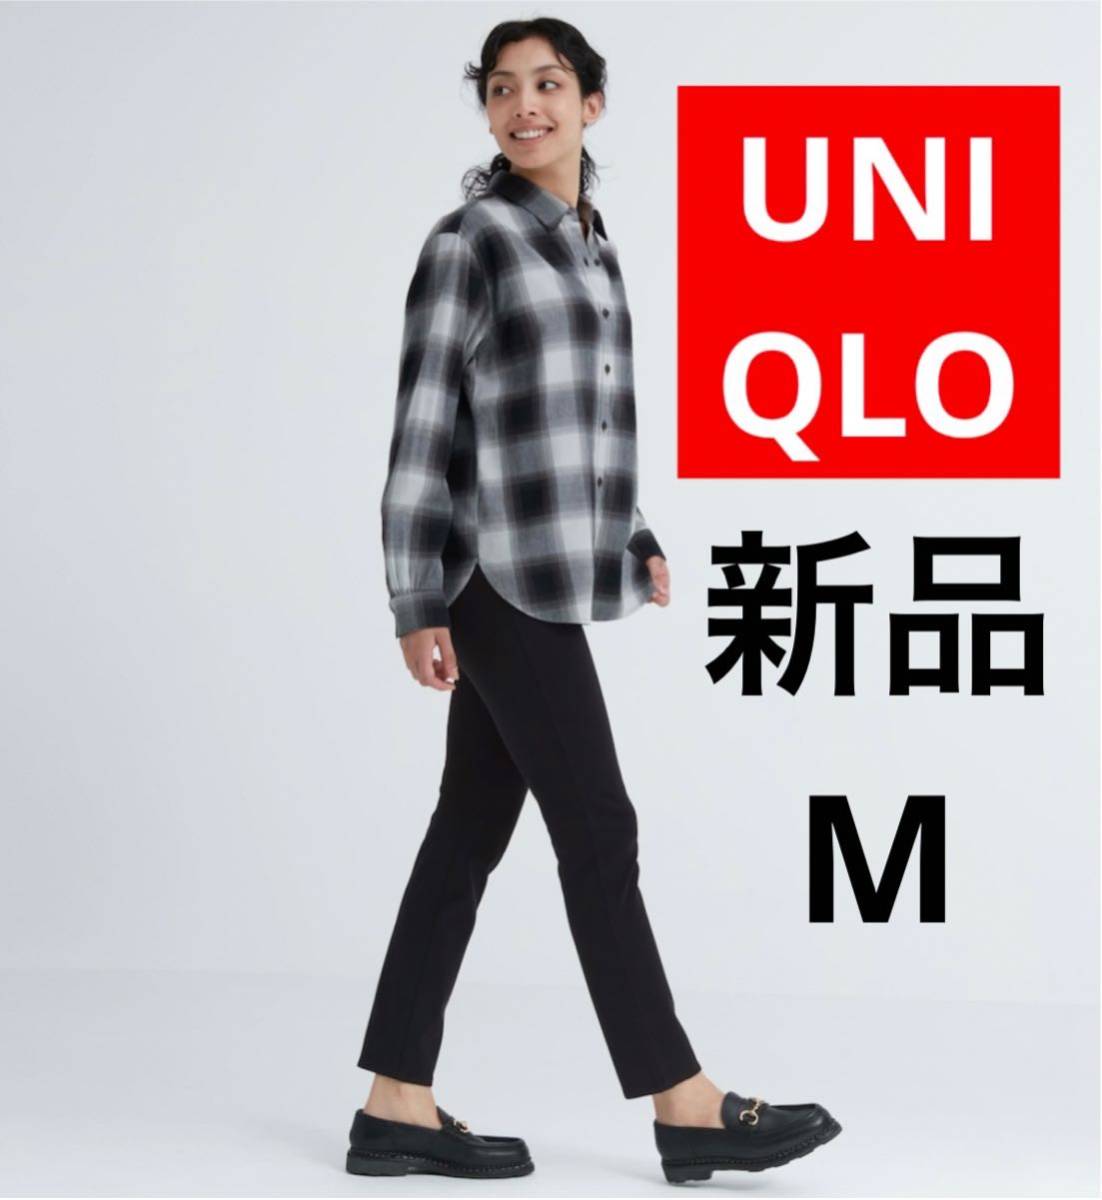 新品 UNIQLO ユニクロ ウルトラストレッチ レギンスパンツ 丈標準 M ブラック 黒 ストレッチ レディース_画像1